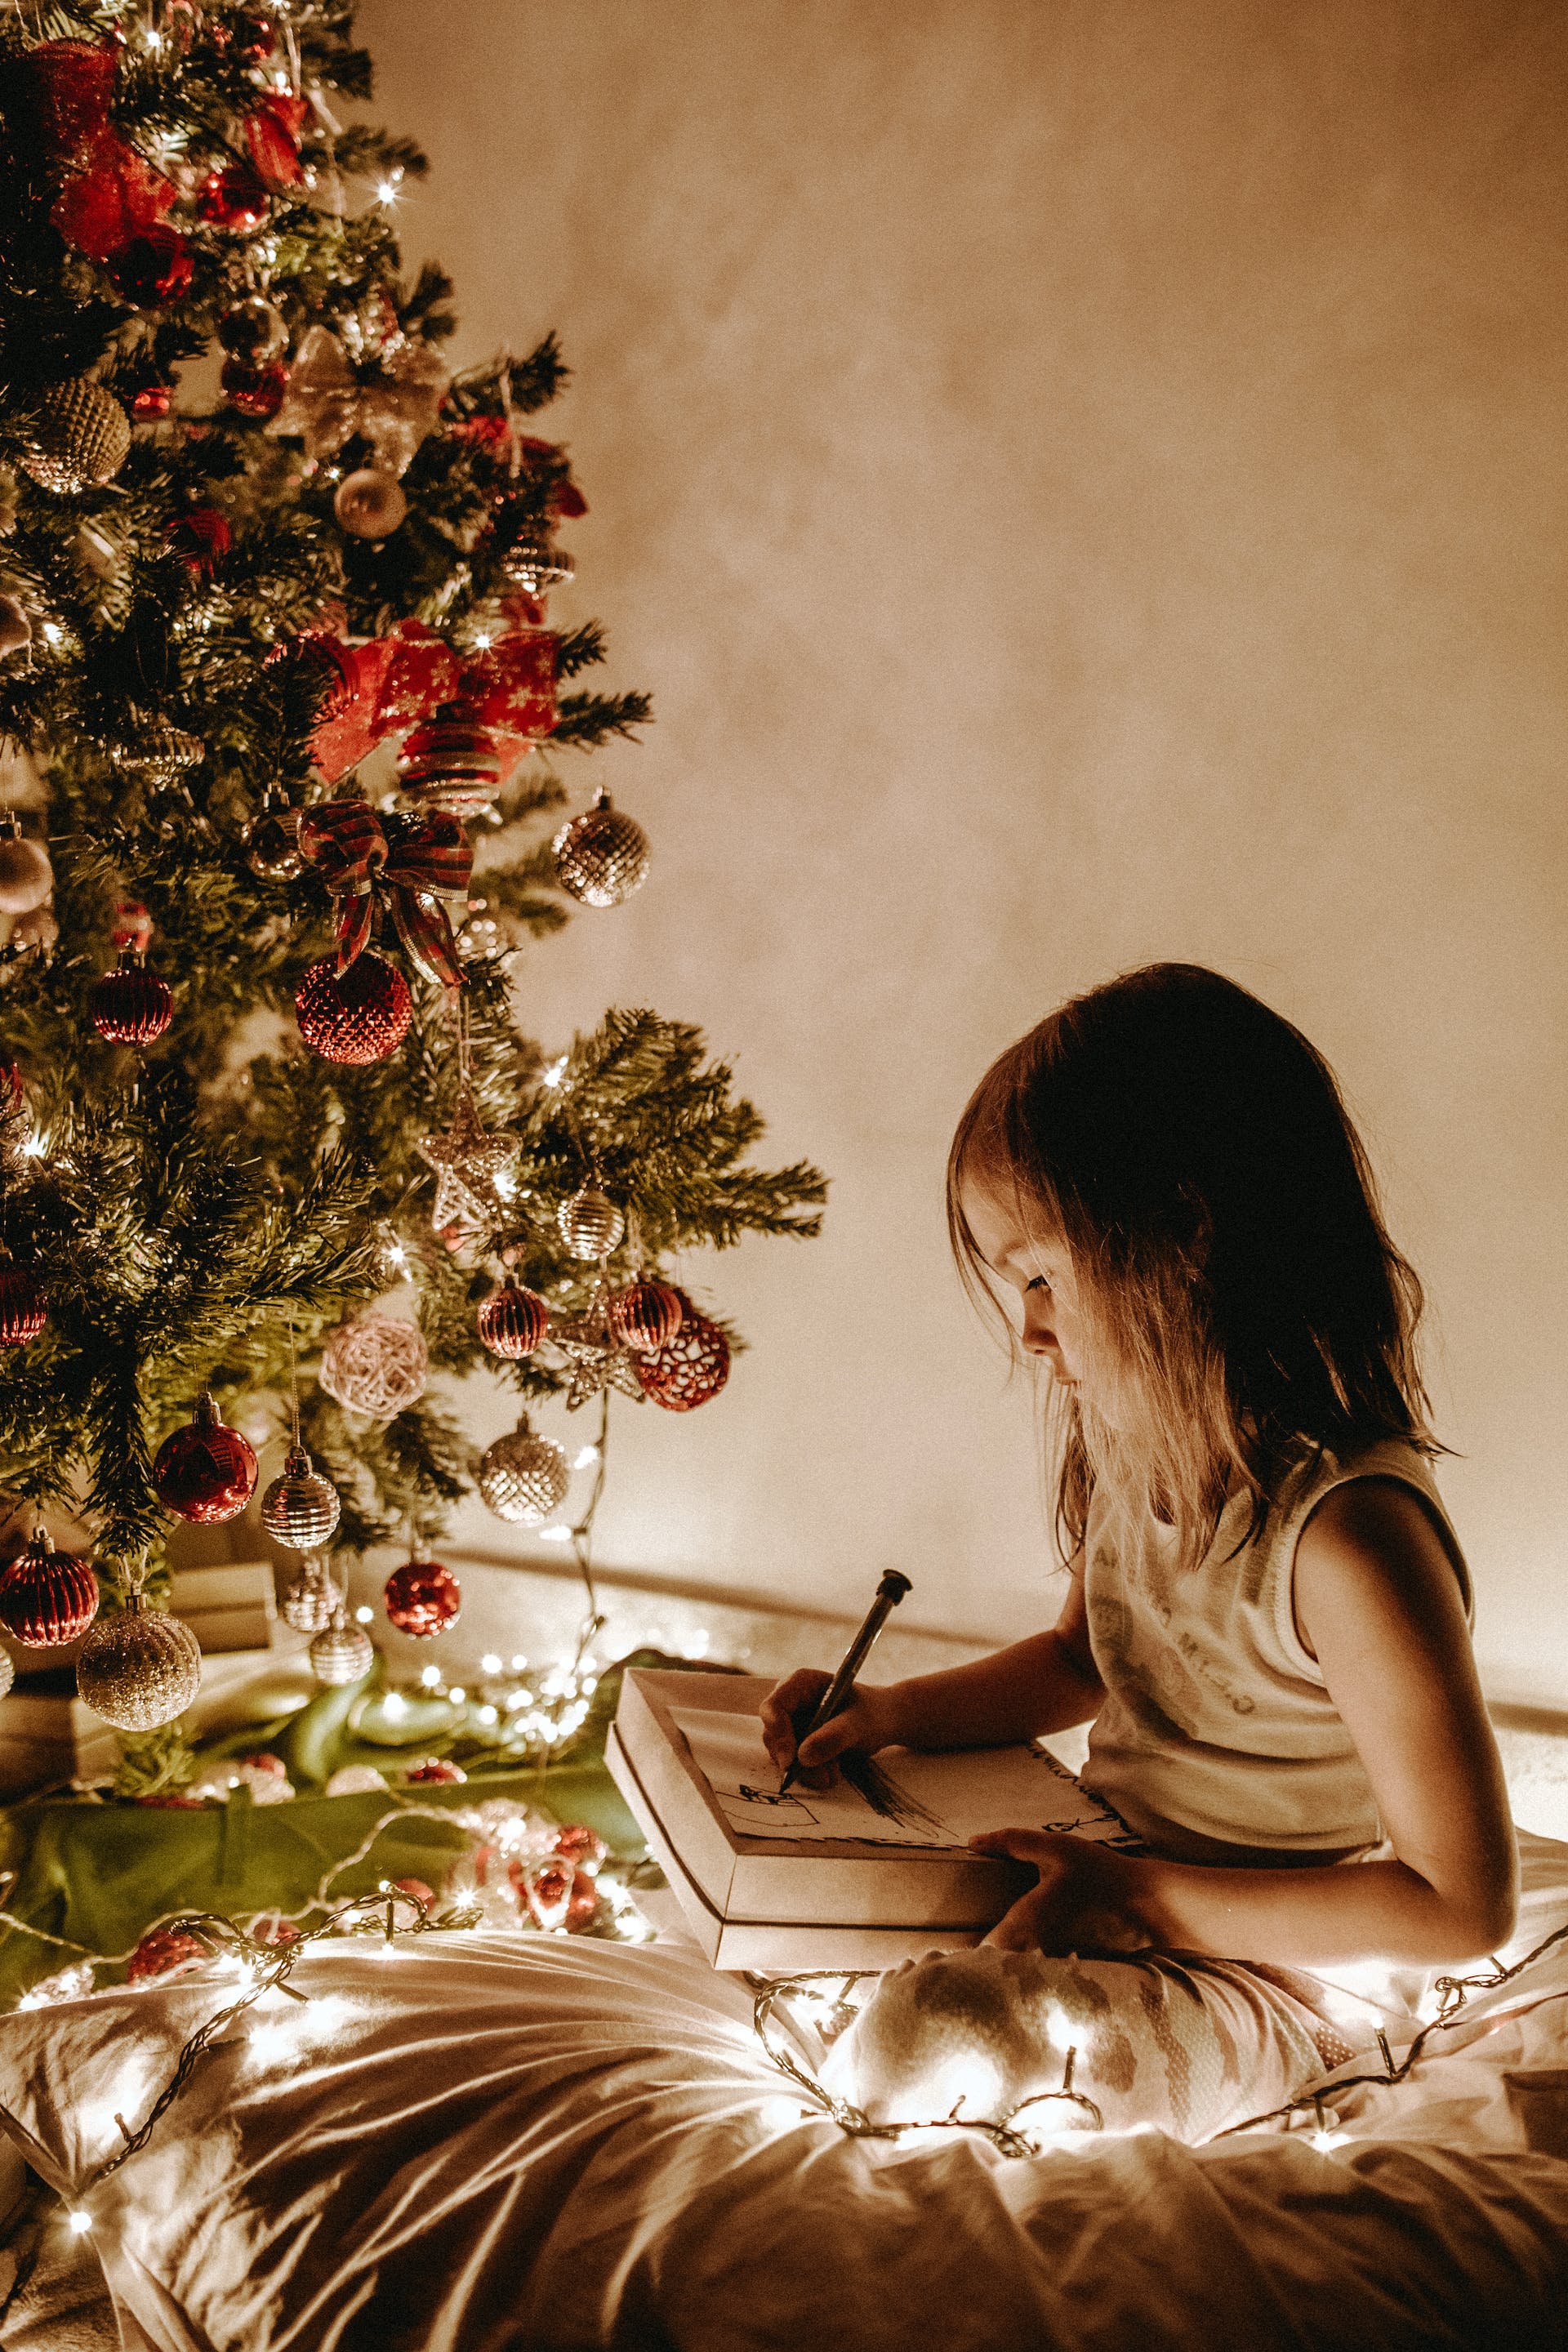 Ein kleines Mädchen sitzt neben einem Weihnachtsbaum | Quelle: Pexels